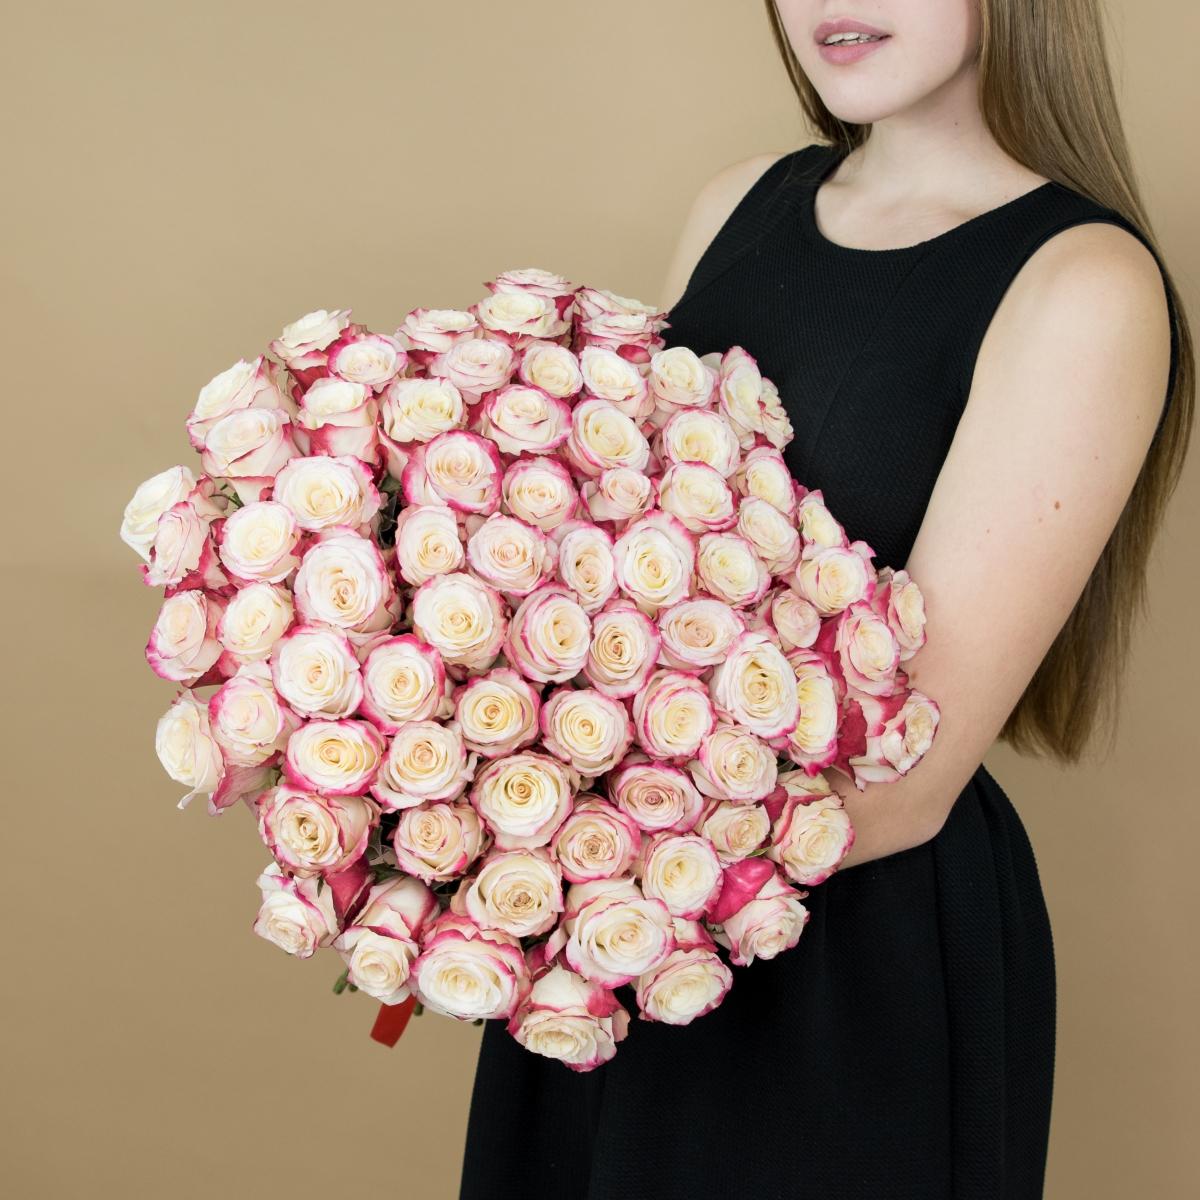 Розы красно-белые 101 шт. (40 см) articul: 88644